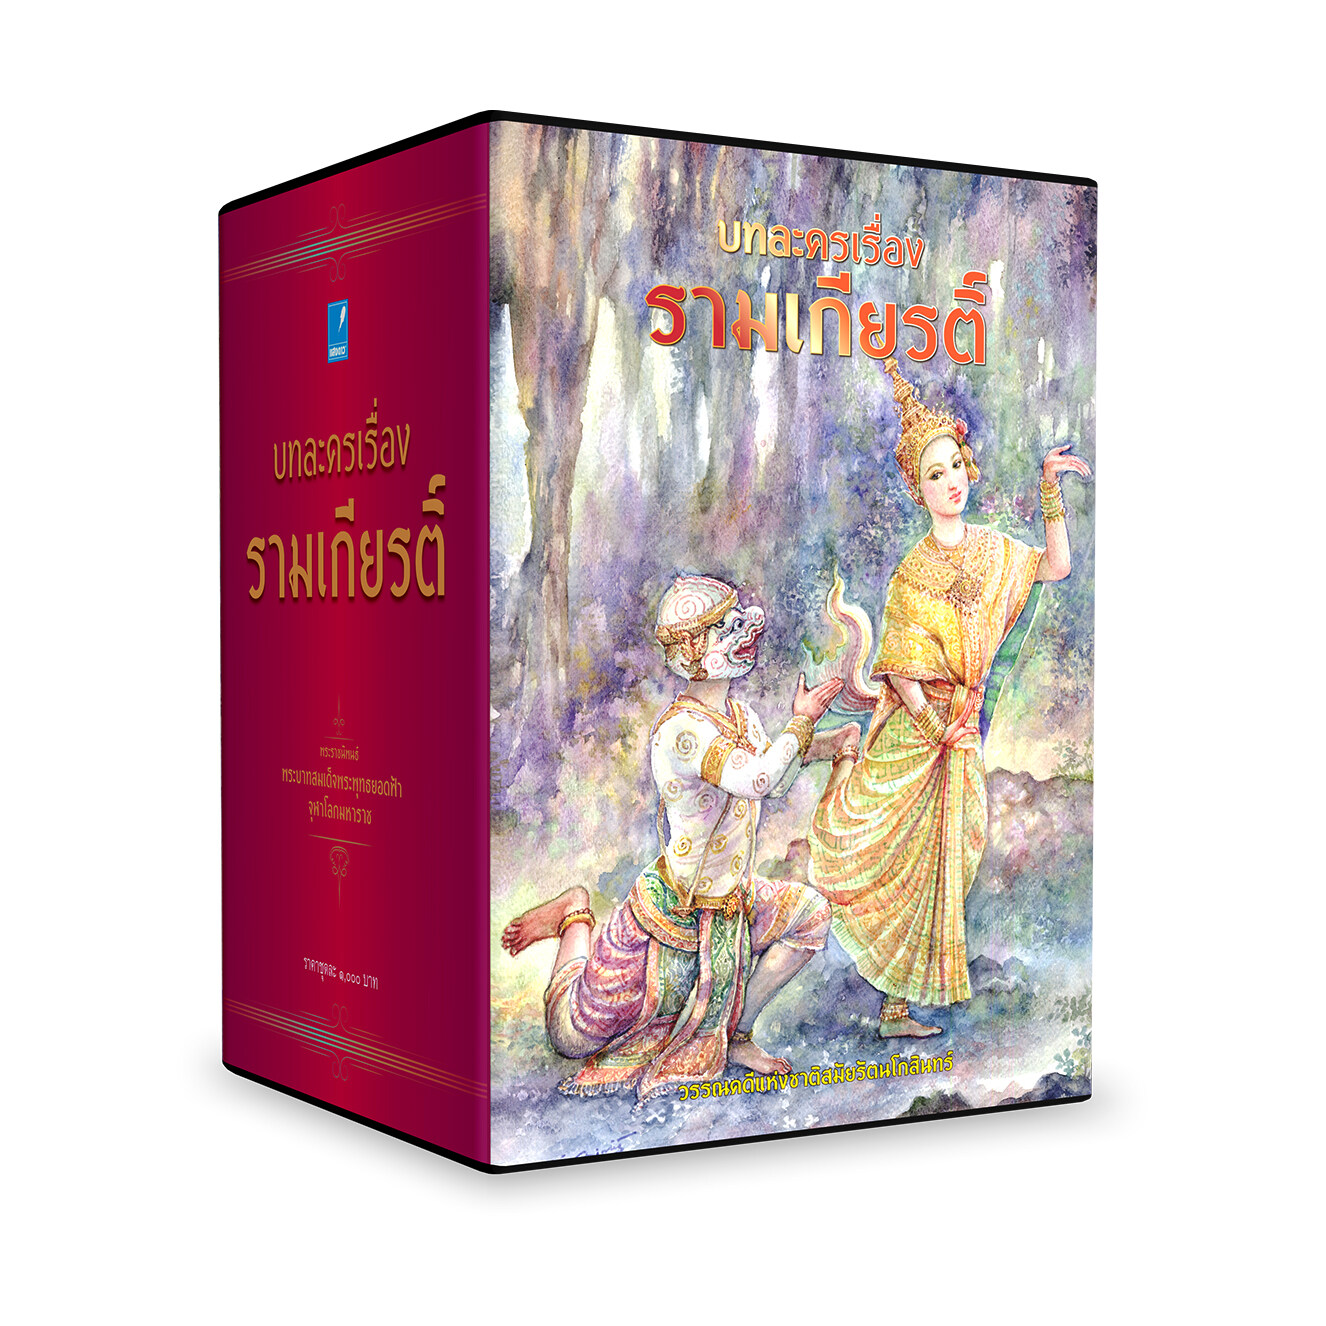 Saengdao(แสงดาว) หนังสือ ชุดบทละครเรื่องรามเกียรติ์ (ร้อยกรอง) 2 เล่ม จบ พร้อม Boxset